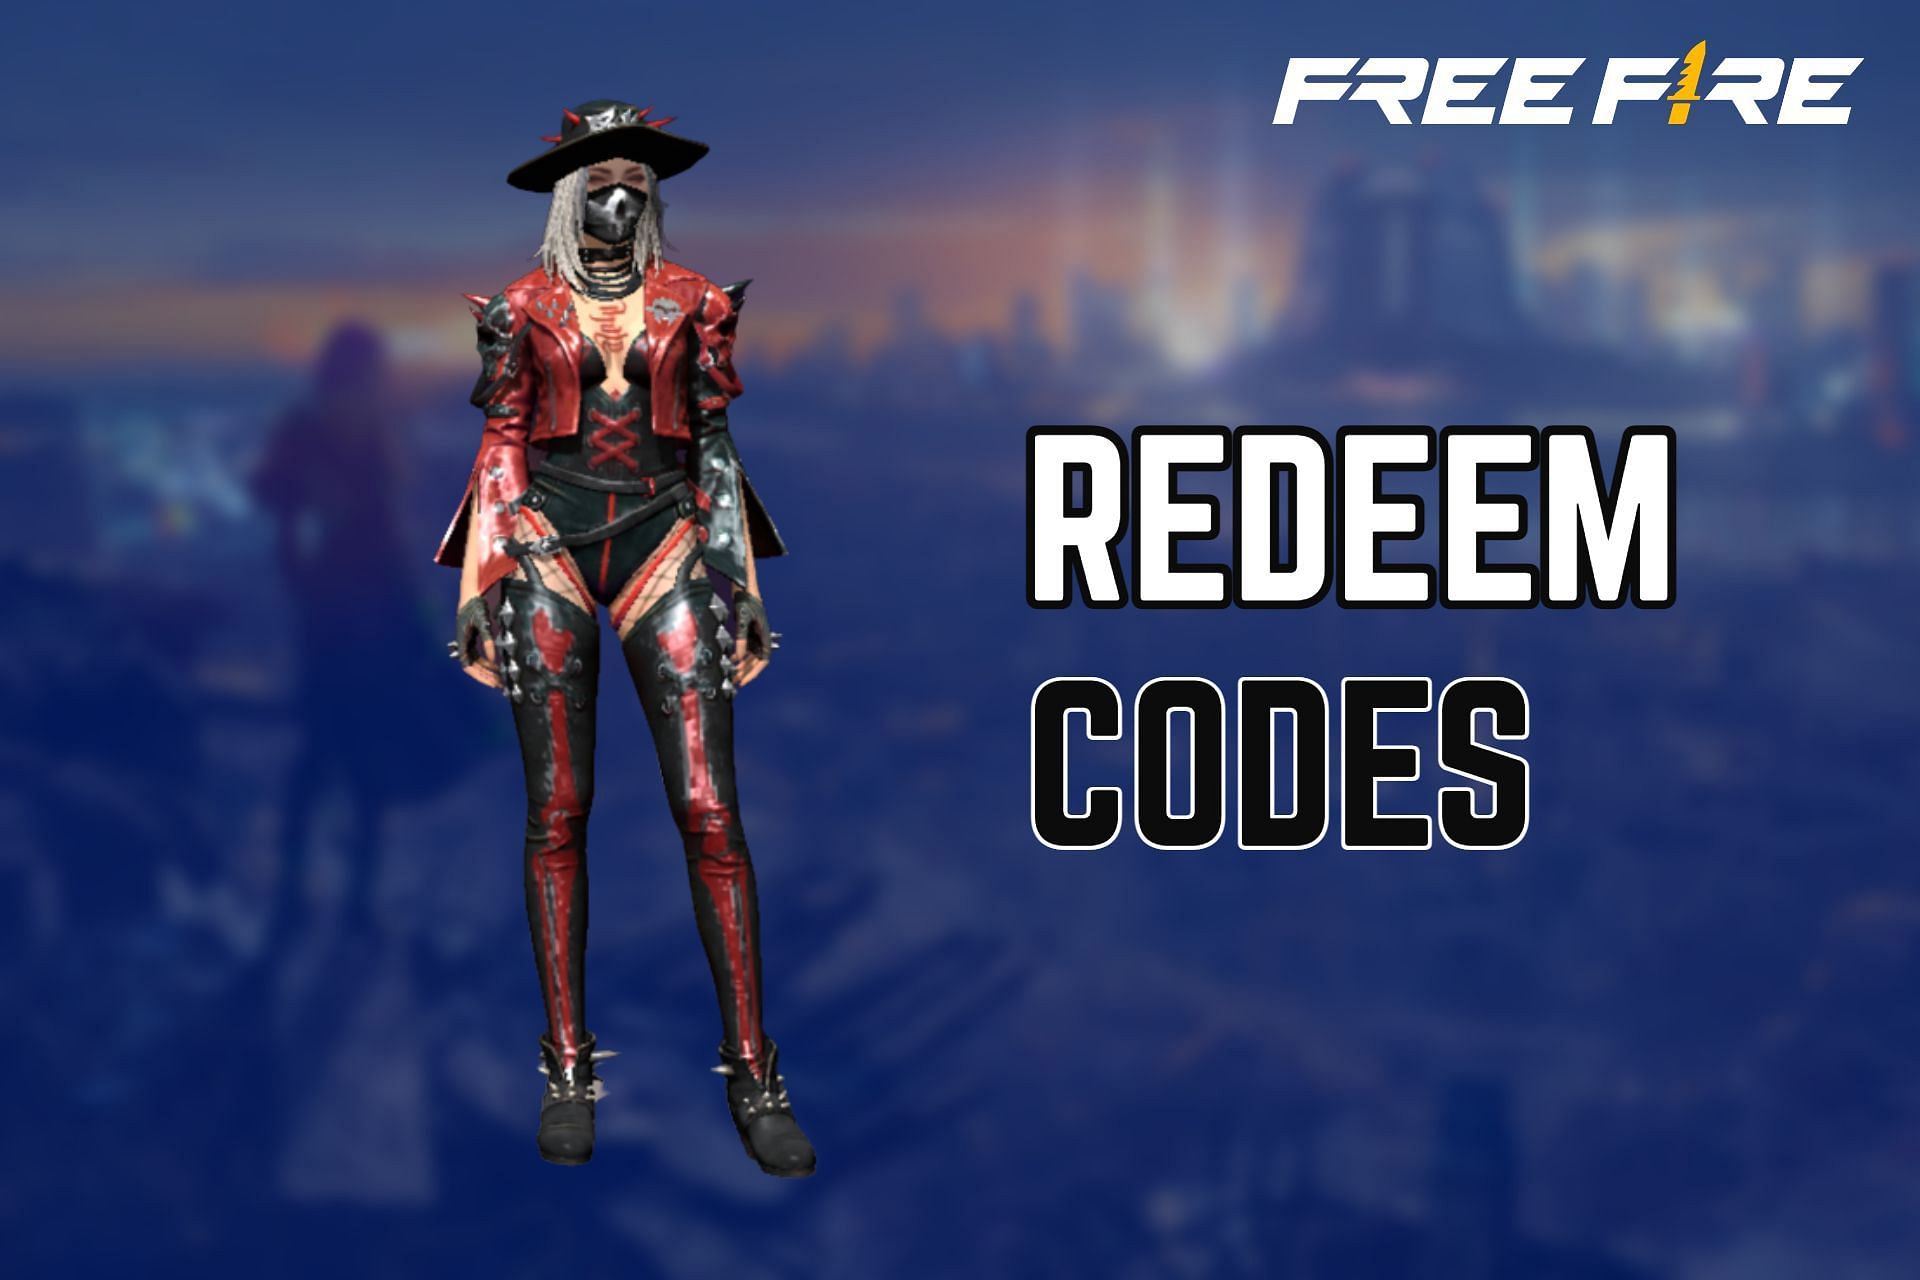 Utilize redeem codes to get free rewards in Free Fire (Image via Sportskeeda)